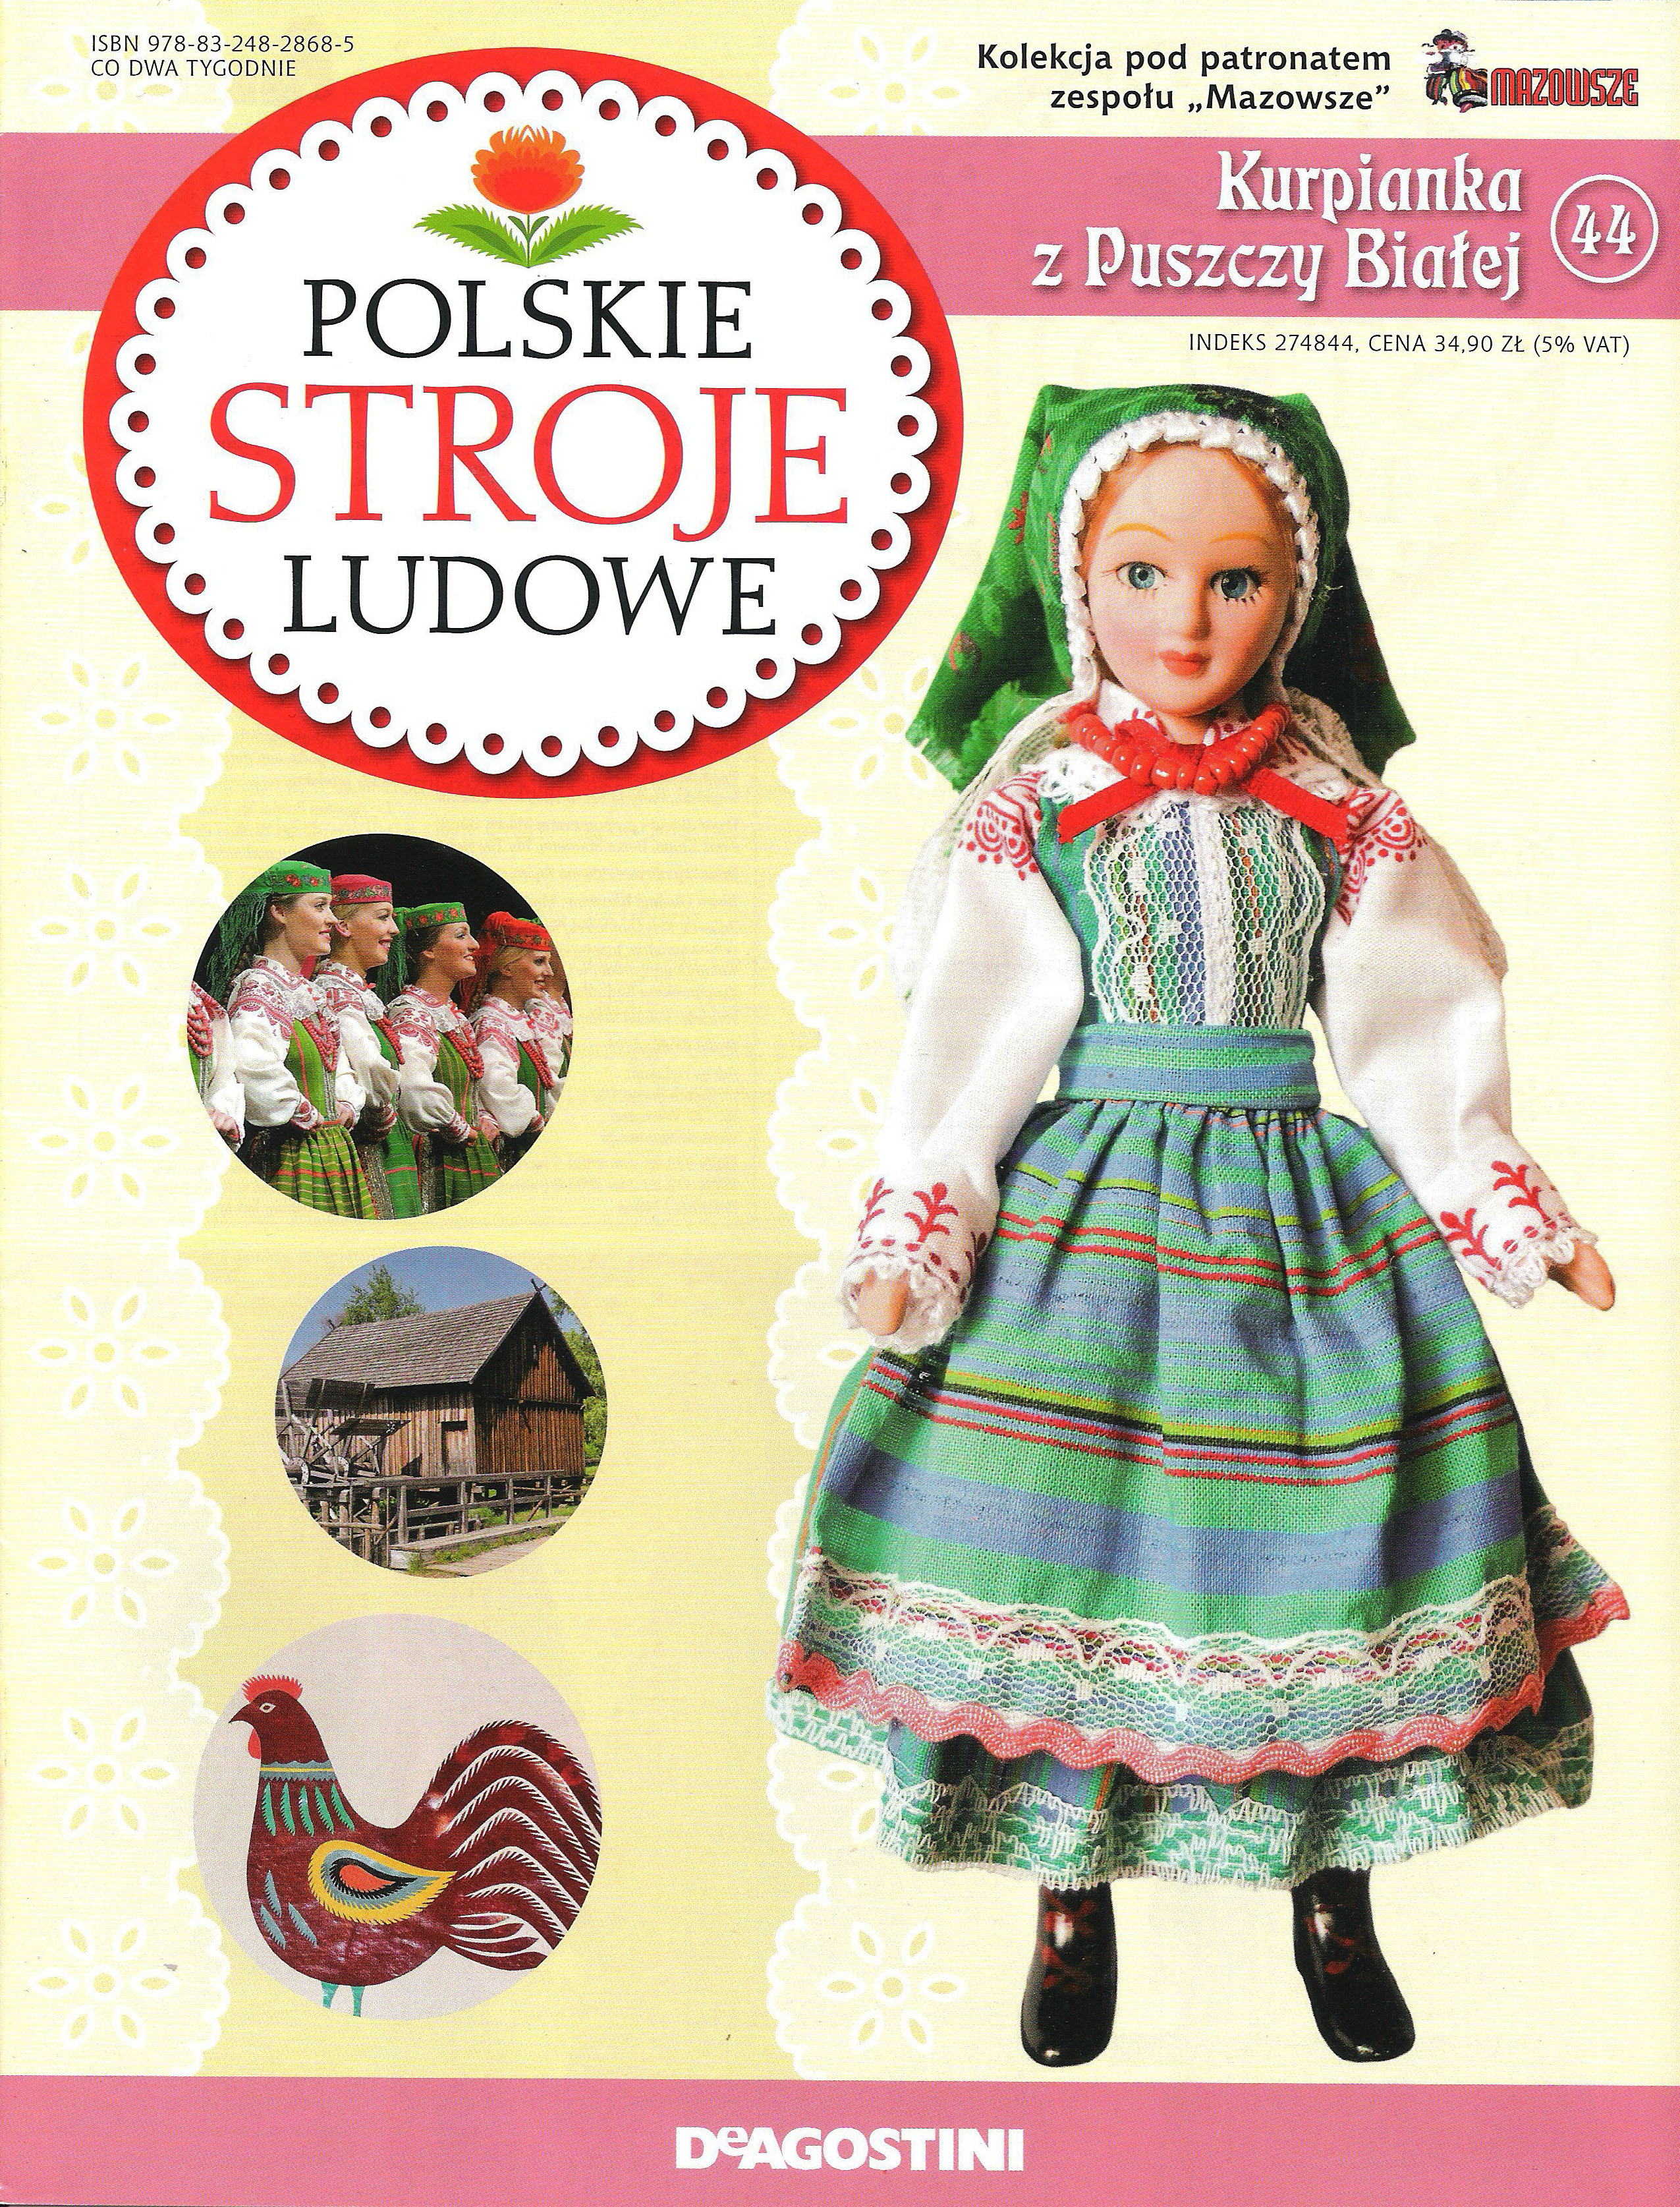 Polskie Stroje Ludowe №044 - Kurpianka z Puszczy Białej - 1